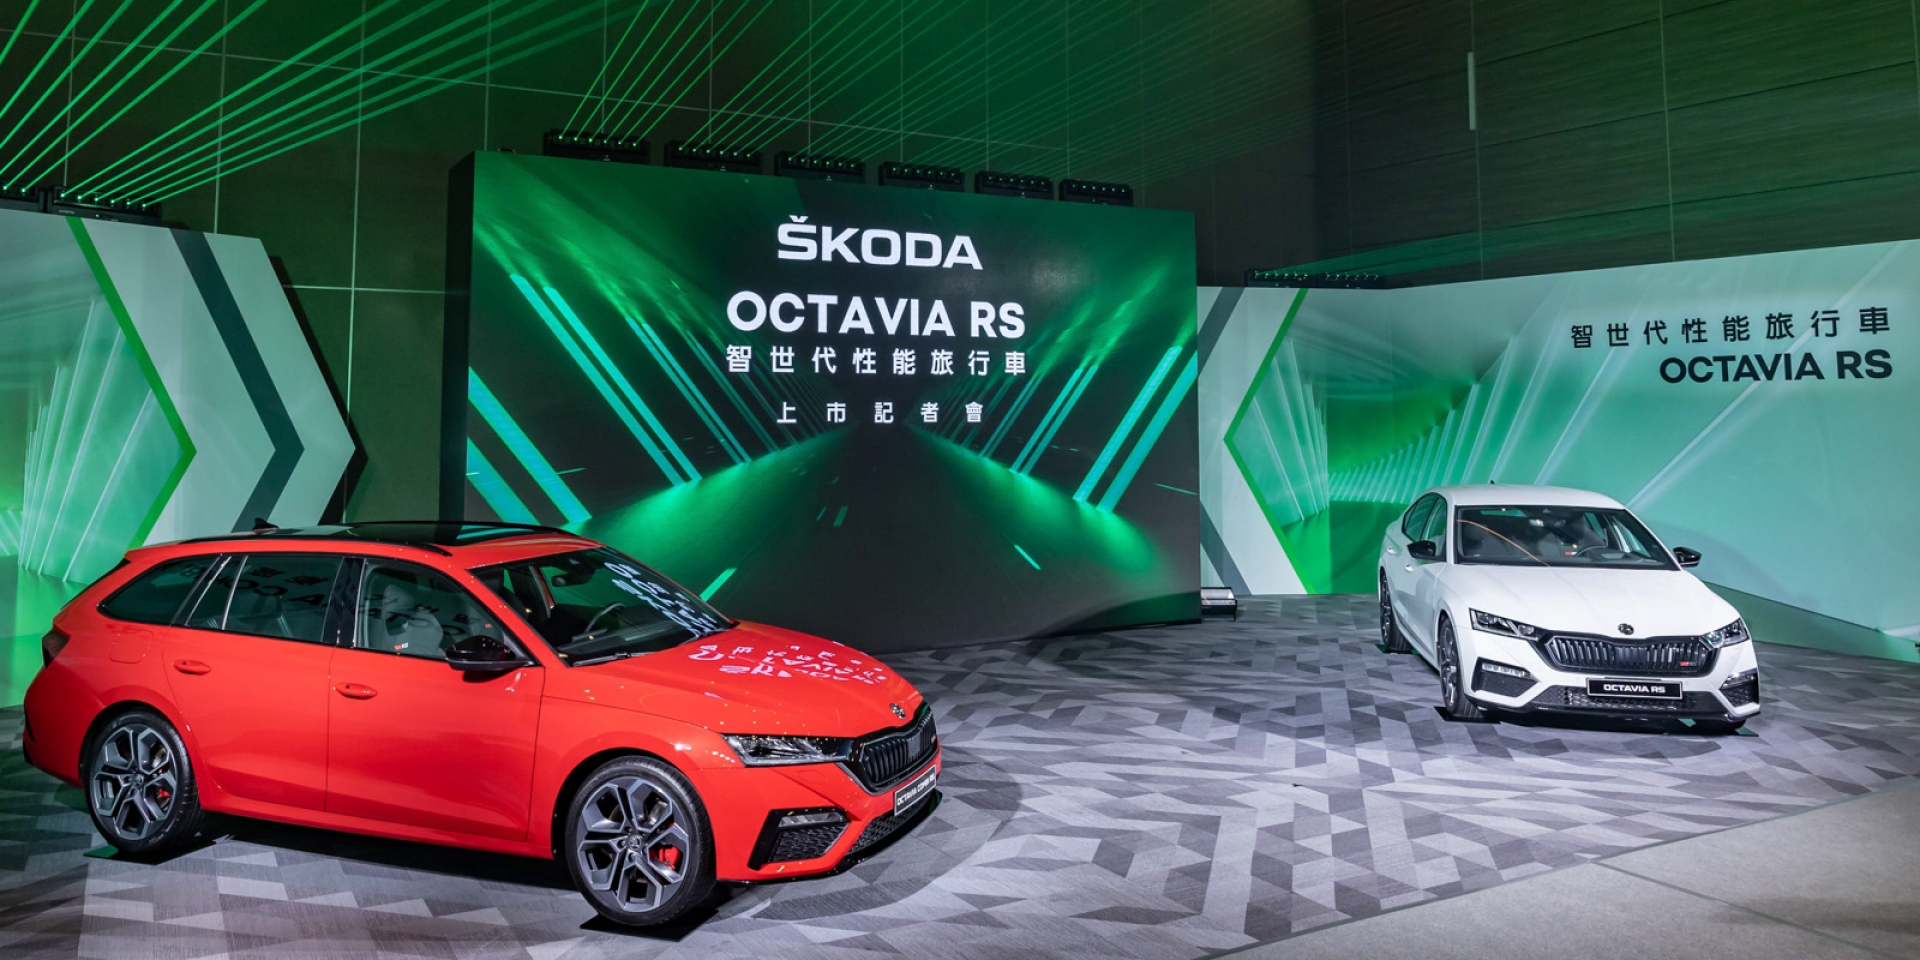 傲視同級 歐洲智世代性能旅行車ŠKODA OCTAVIA RS正式上市 售價149.9萬元起